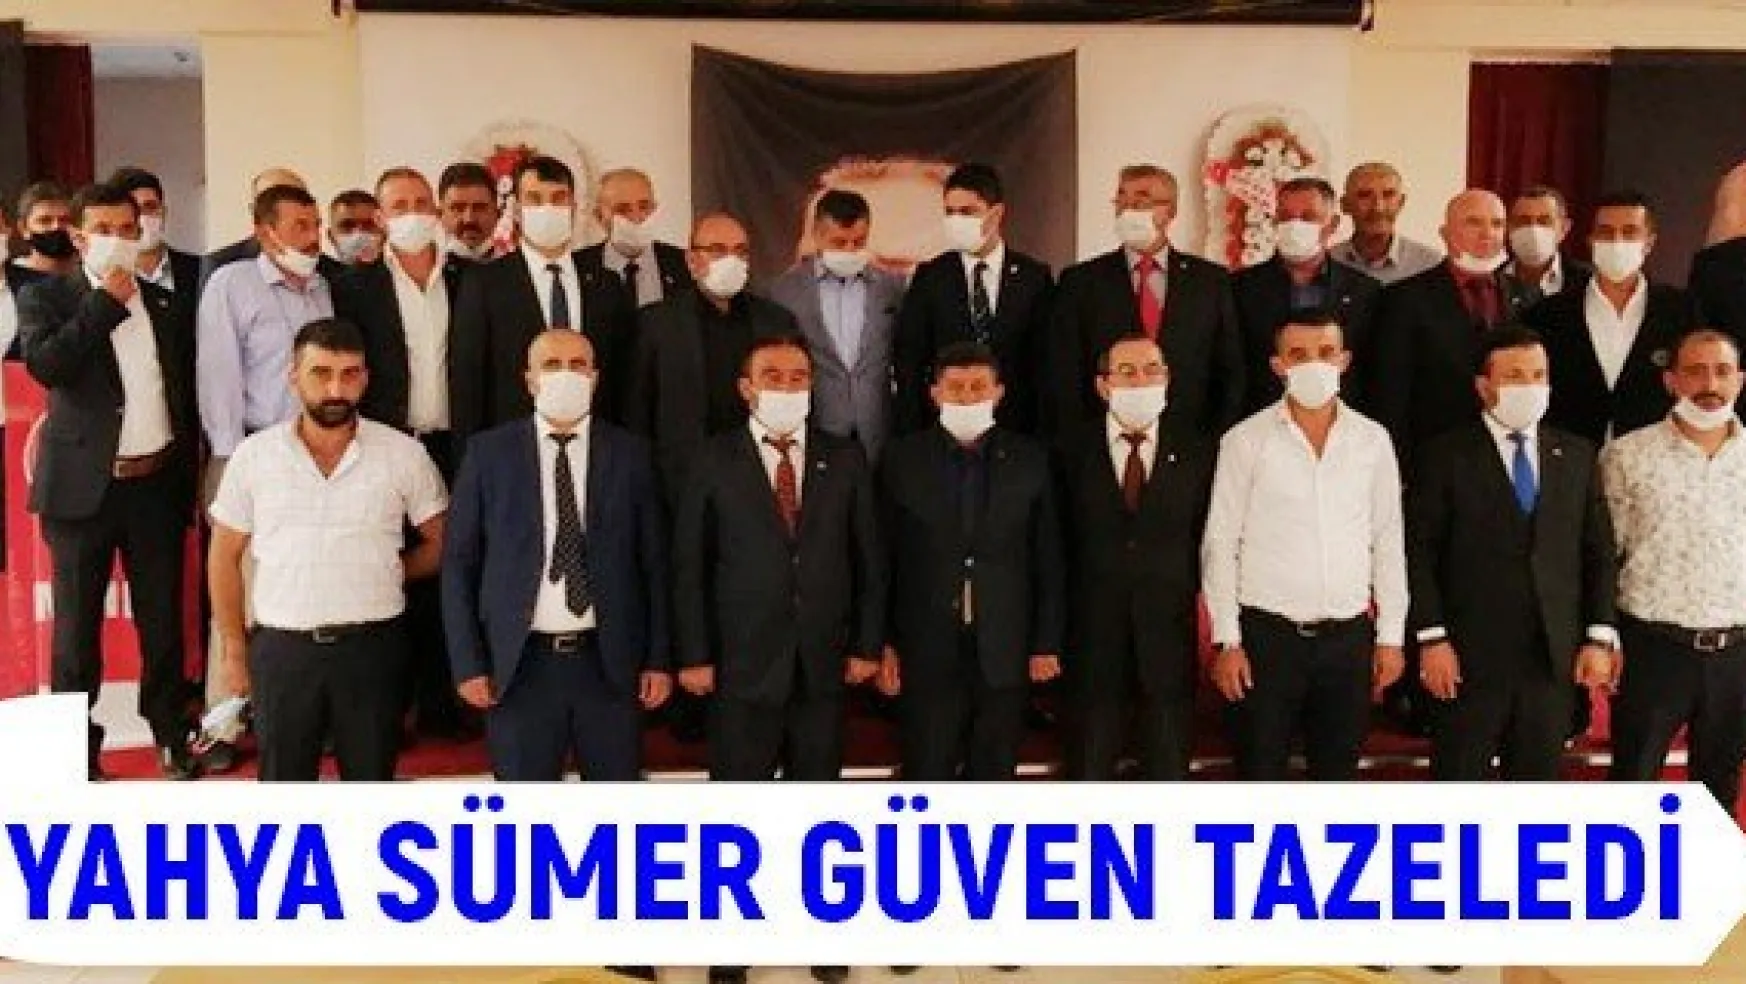 Yeşilhisar MHP İlçe Başkanı Yahya Sümer güven tazeledi